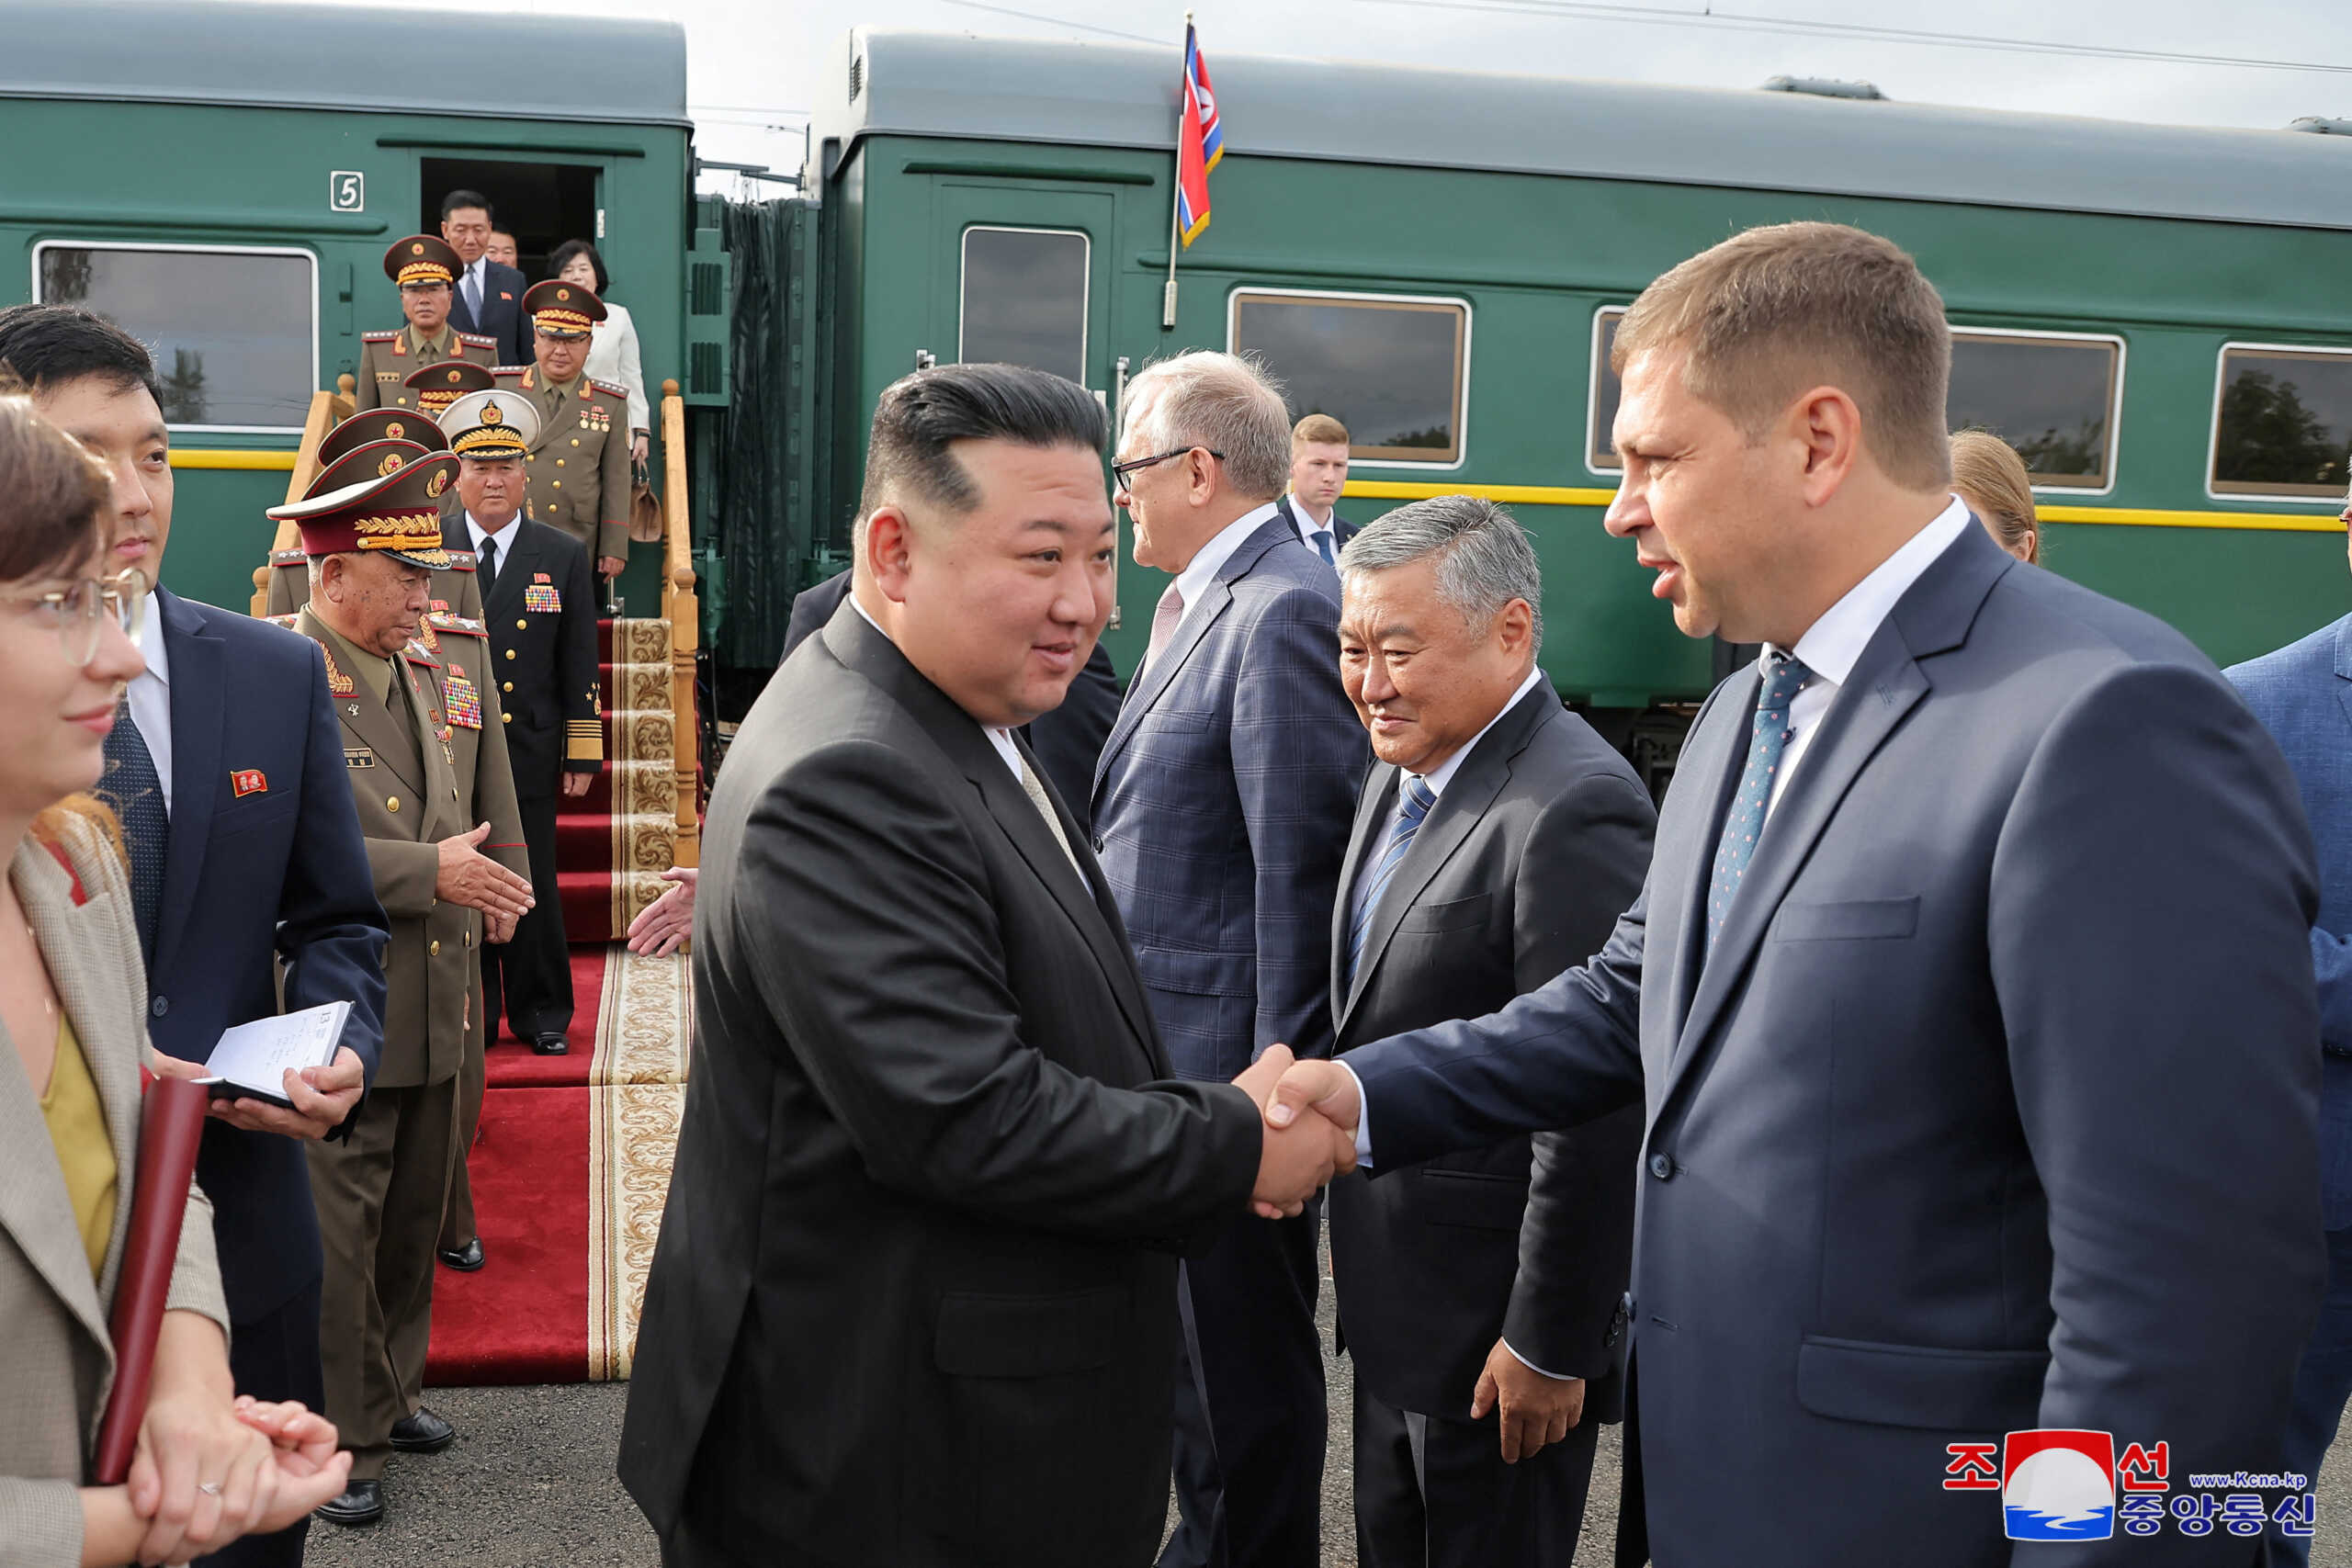 Κιμ Γιονγκ Ουν: Ολοκληρώθηκε η επίσκεψή του στη Ρωσία – Αναχώρησε με τρένο για τη Βόρεια Κορέα